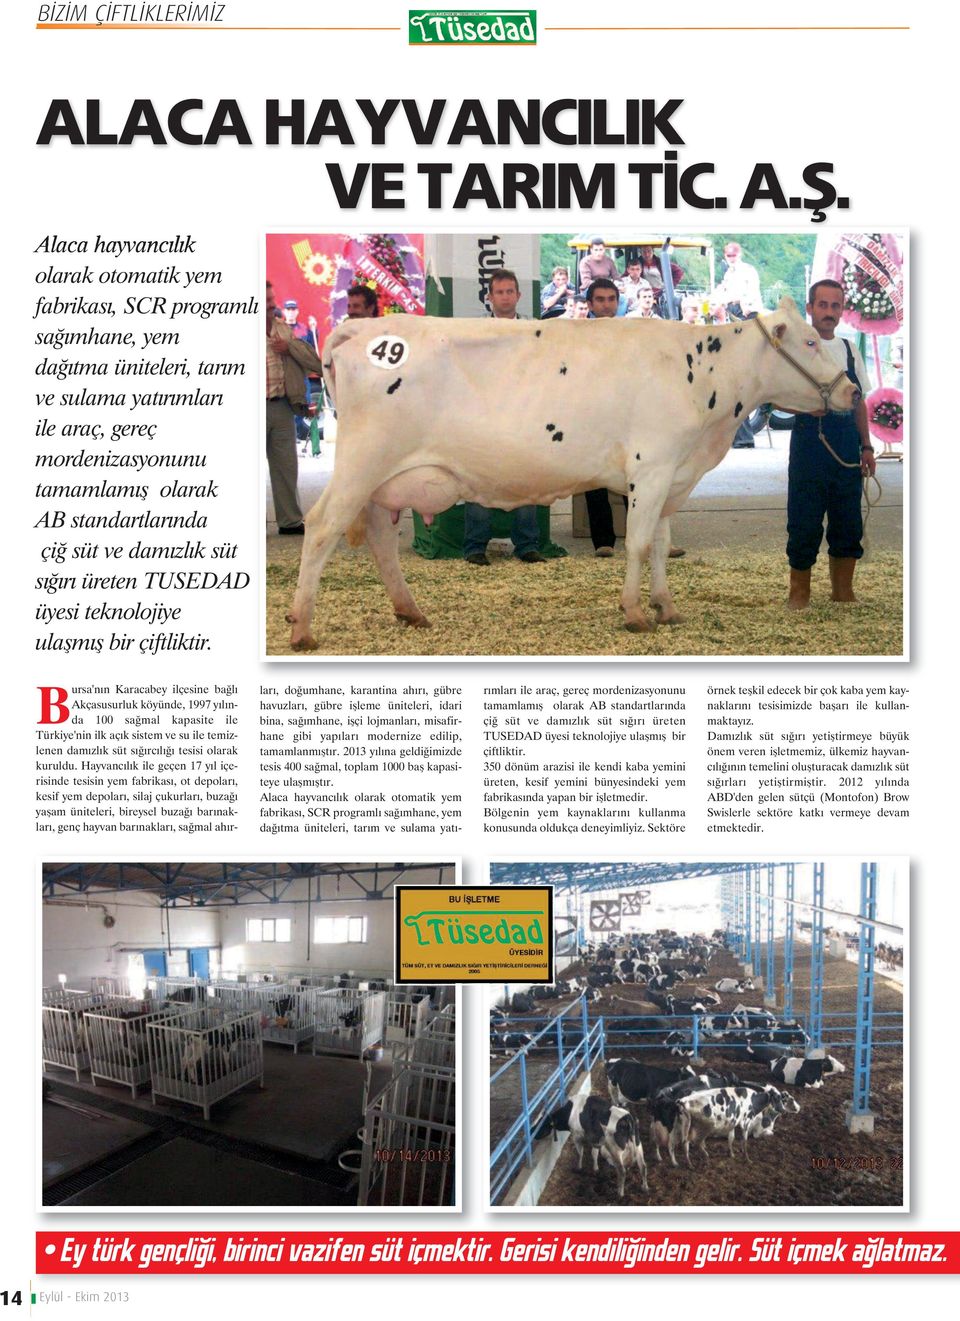 süt ve damızlık süt sığırı üreten TUSEDAD üyesi teknolojiye ulaşmış bir çiftliktir.